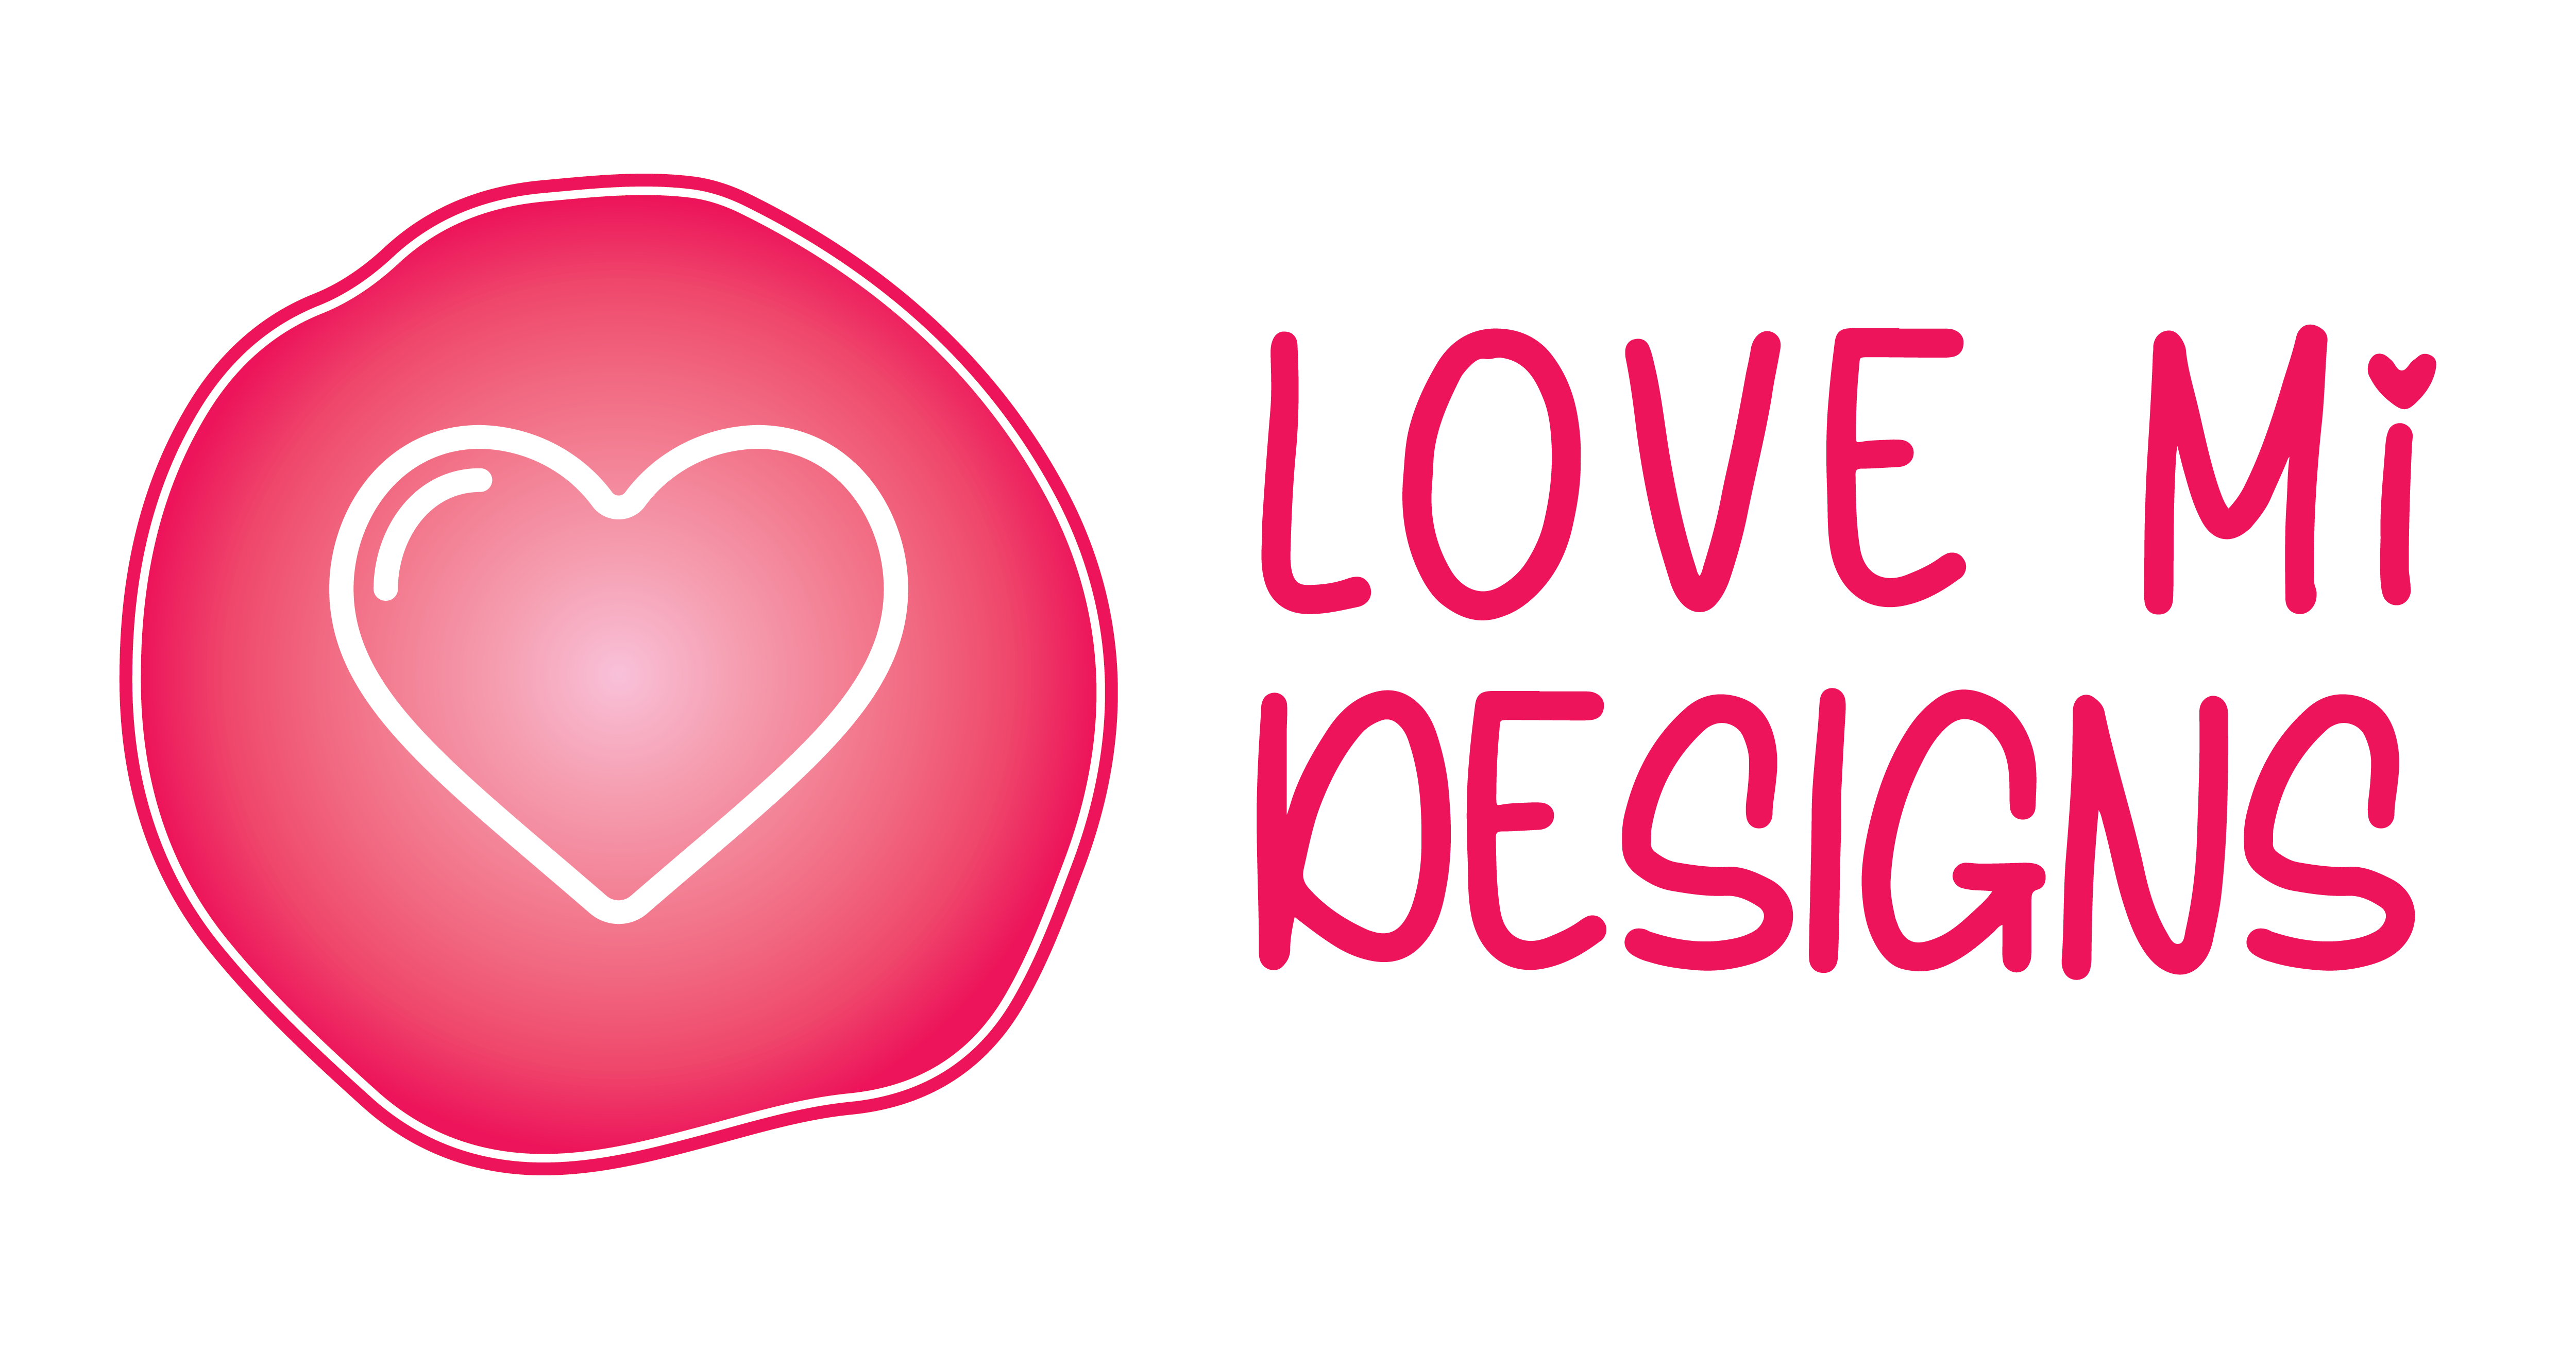 Love Mi Designs